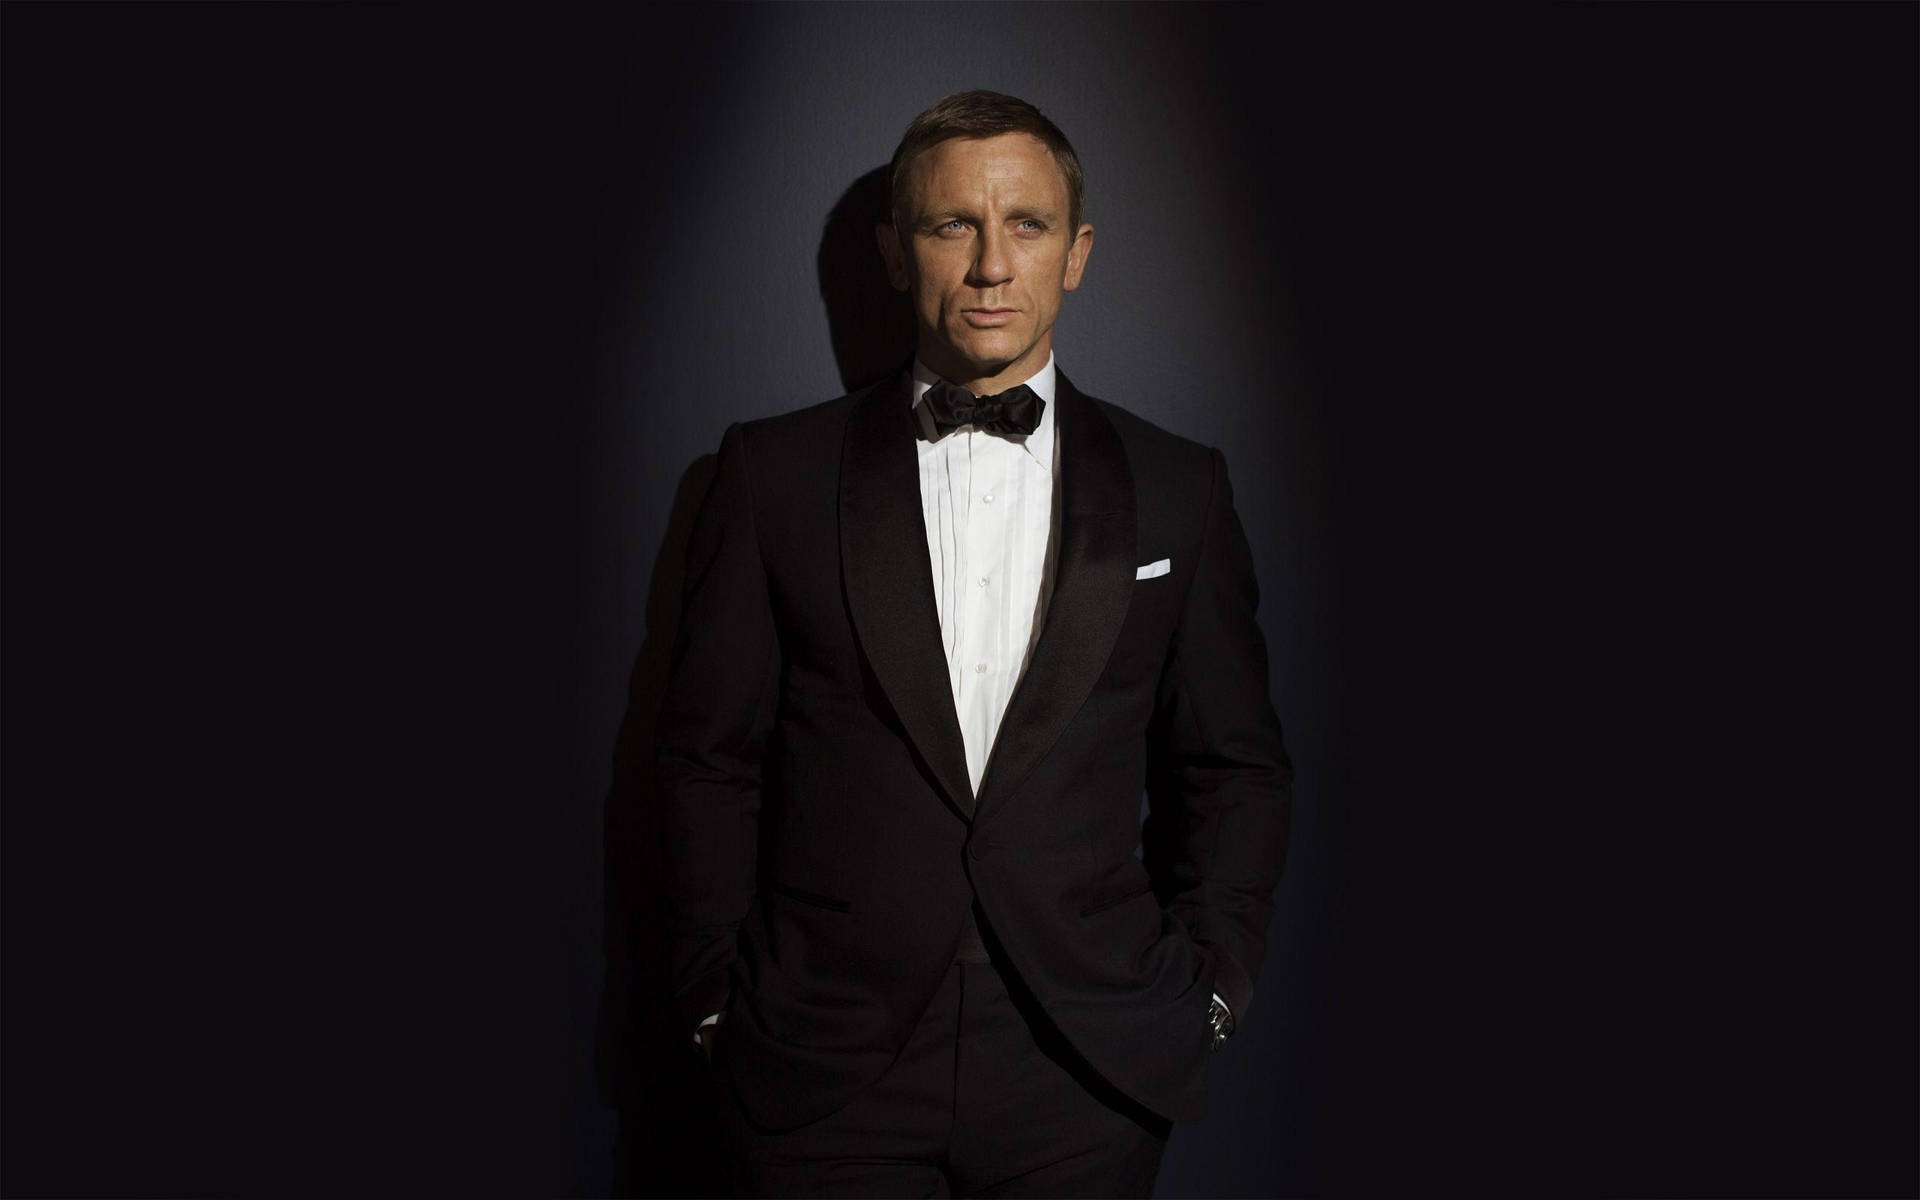 James Bond Actor Daniel Craig